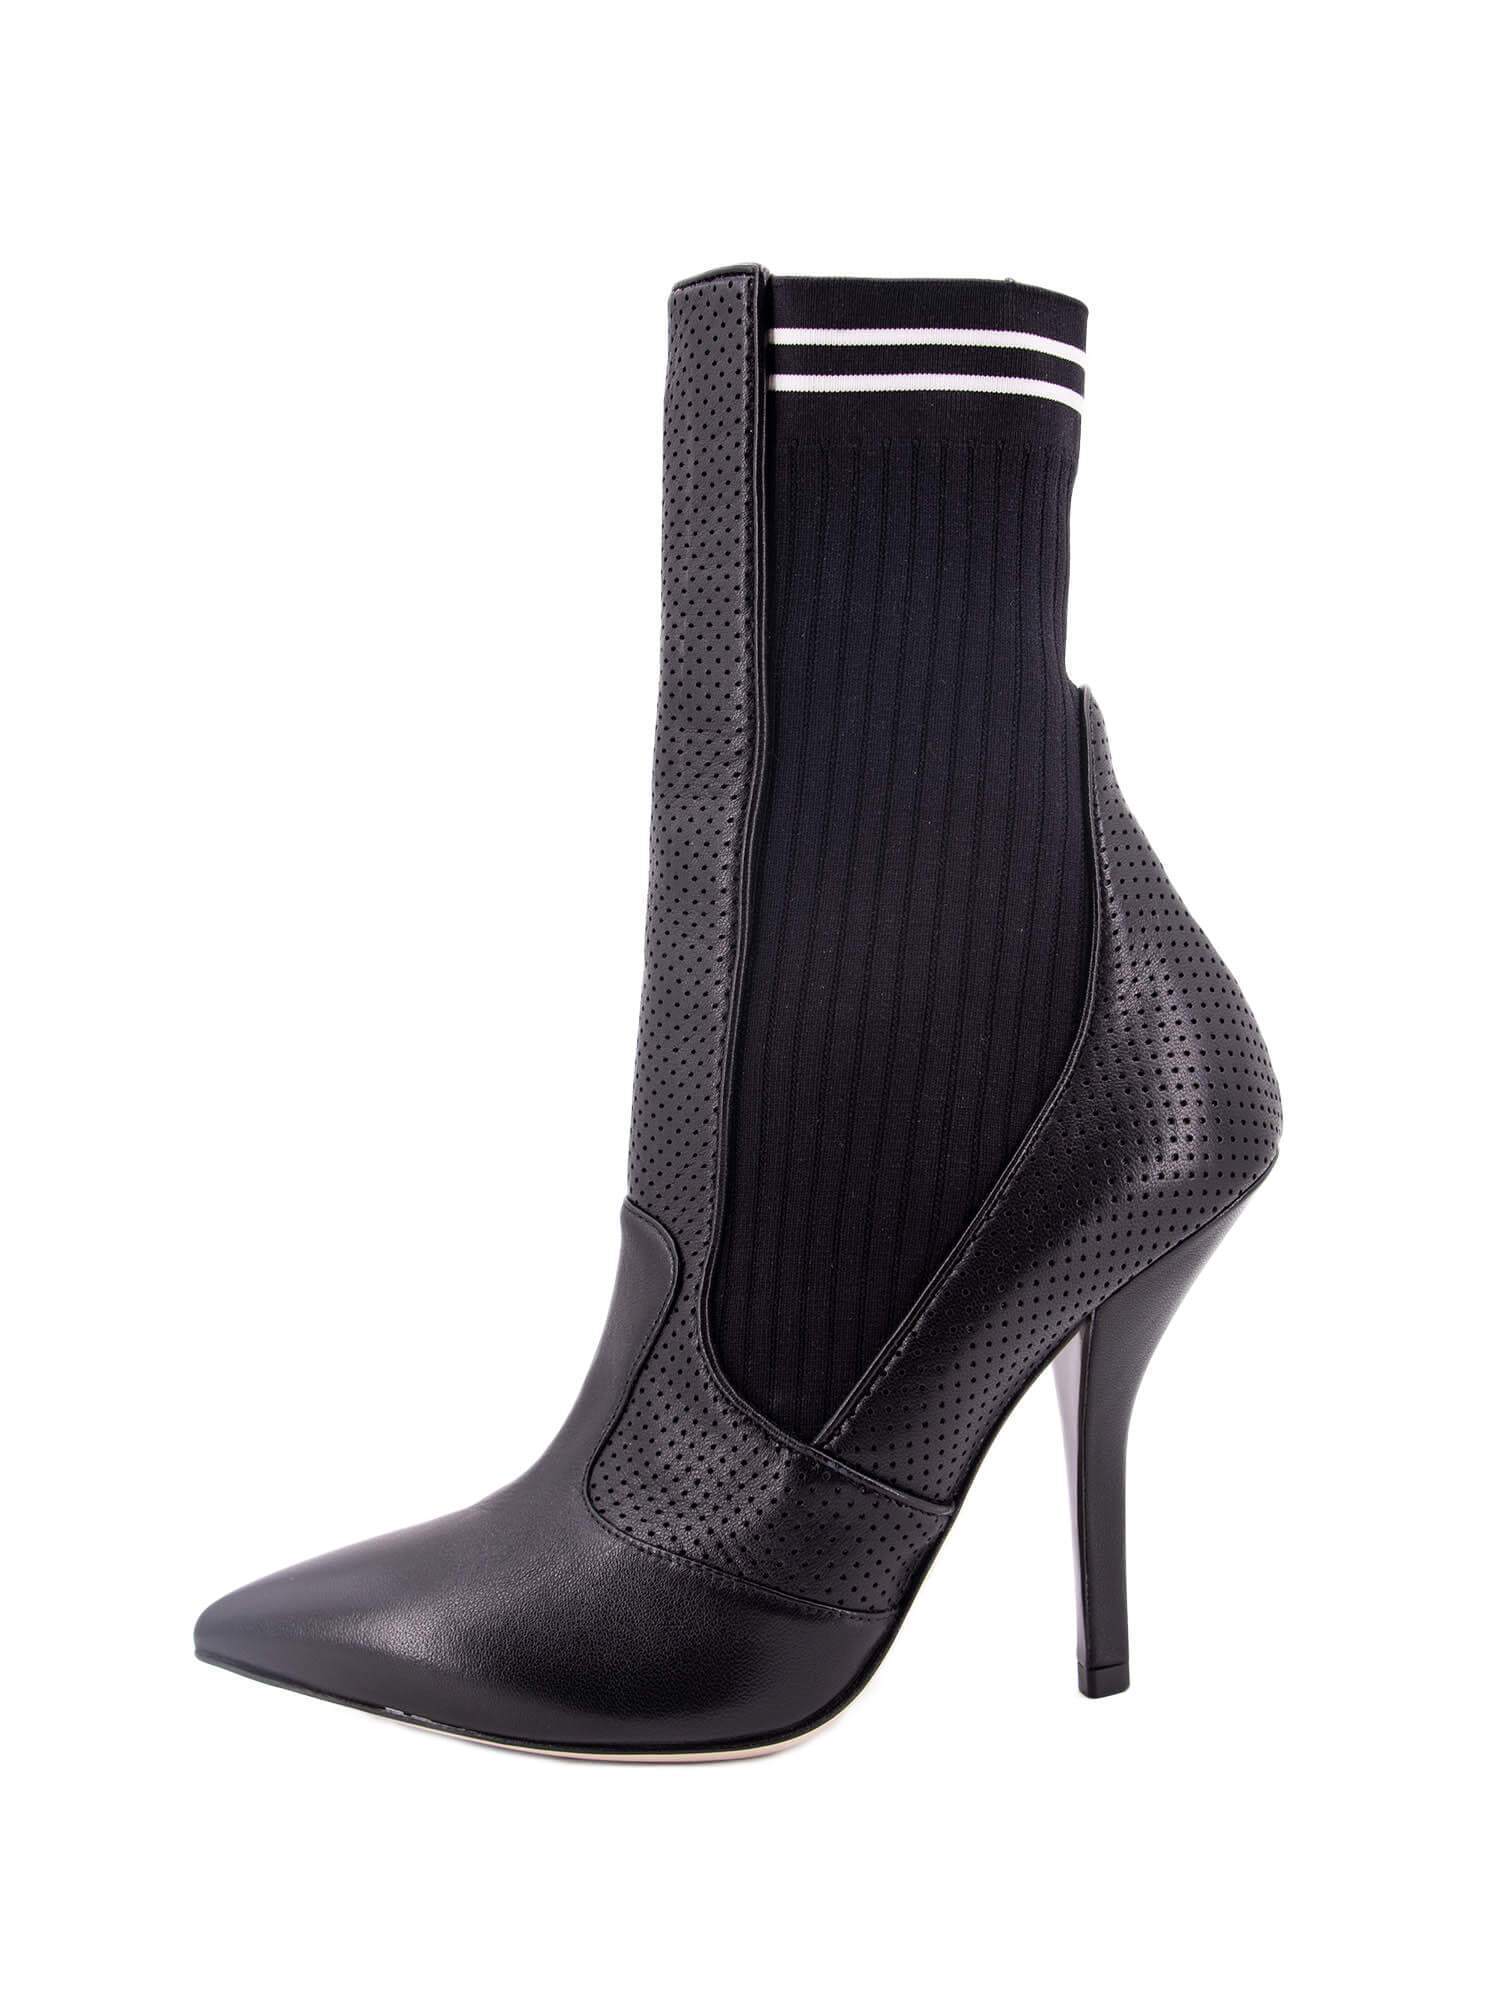 Fendi Leather Sock Boots Black-designer resale